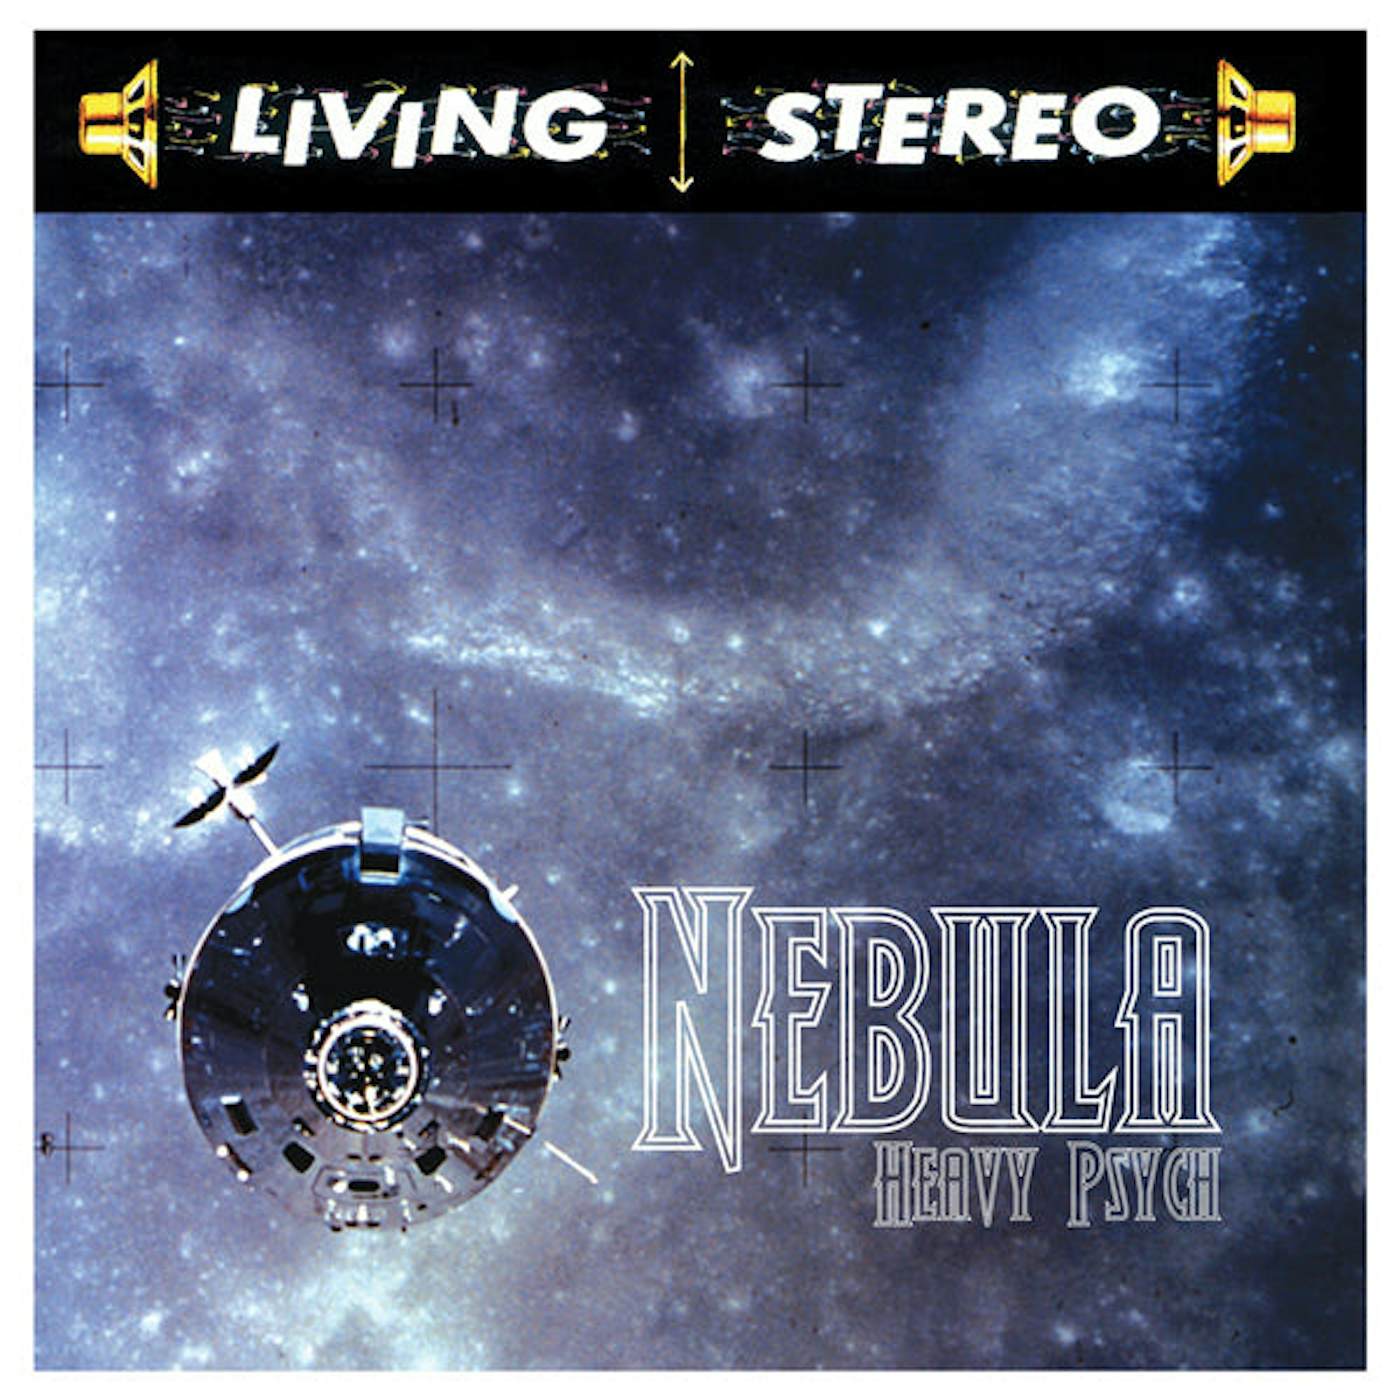 Nebula LP - Heavy Psych (Orange Vinyl)